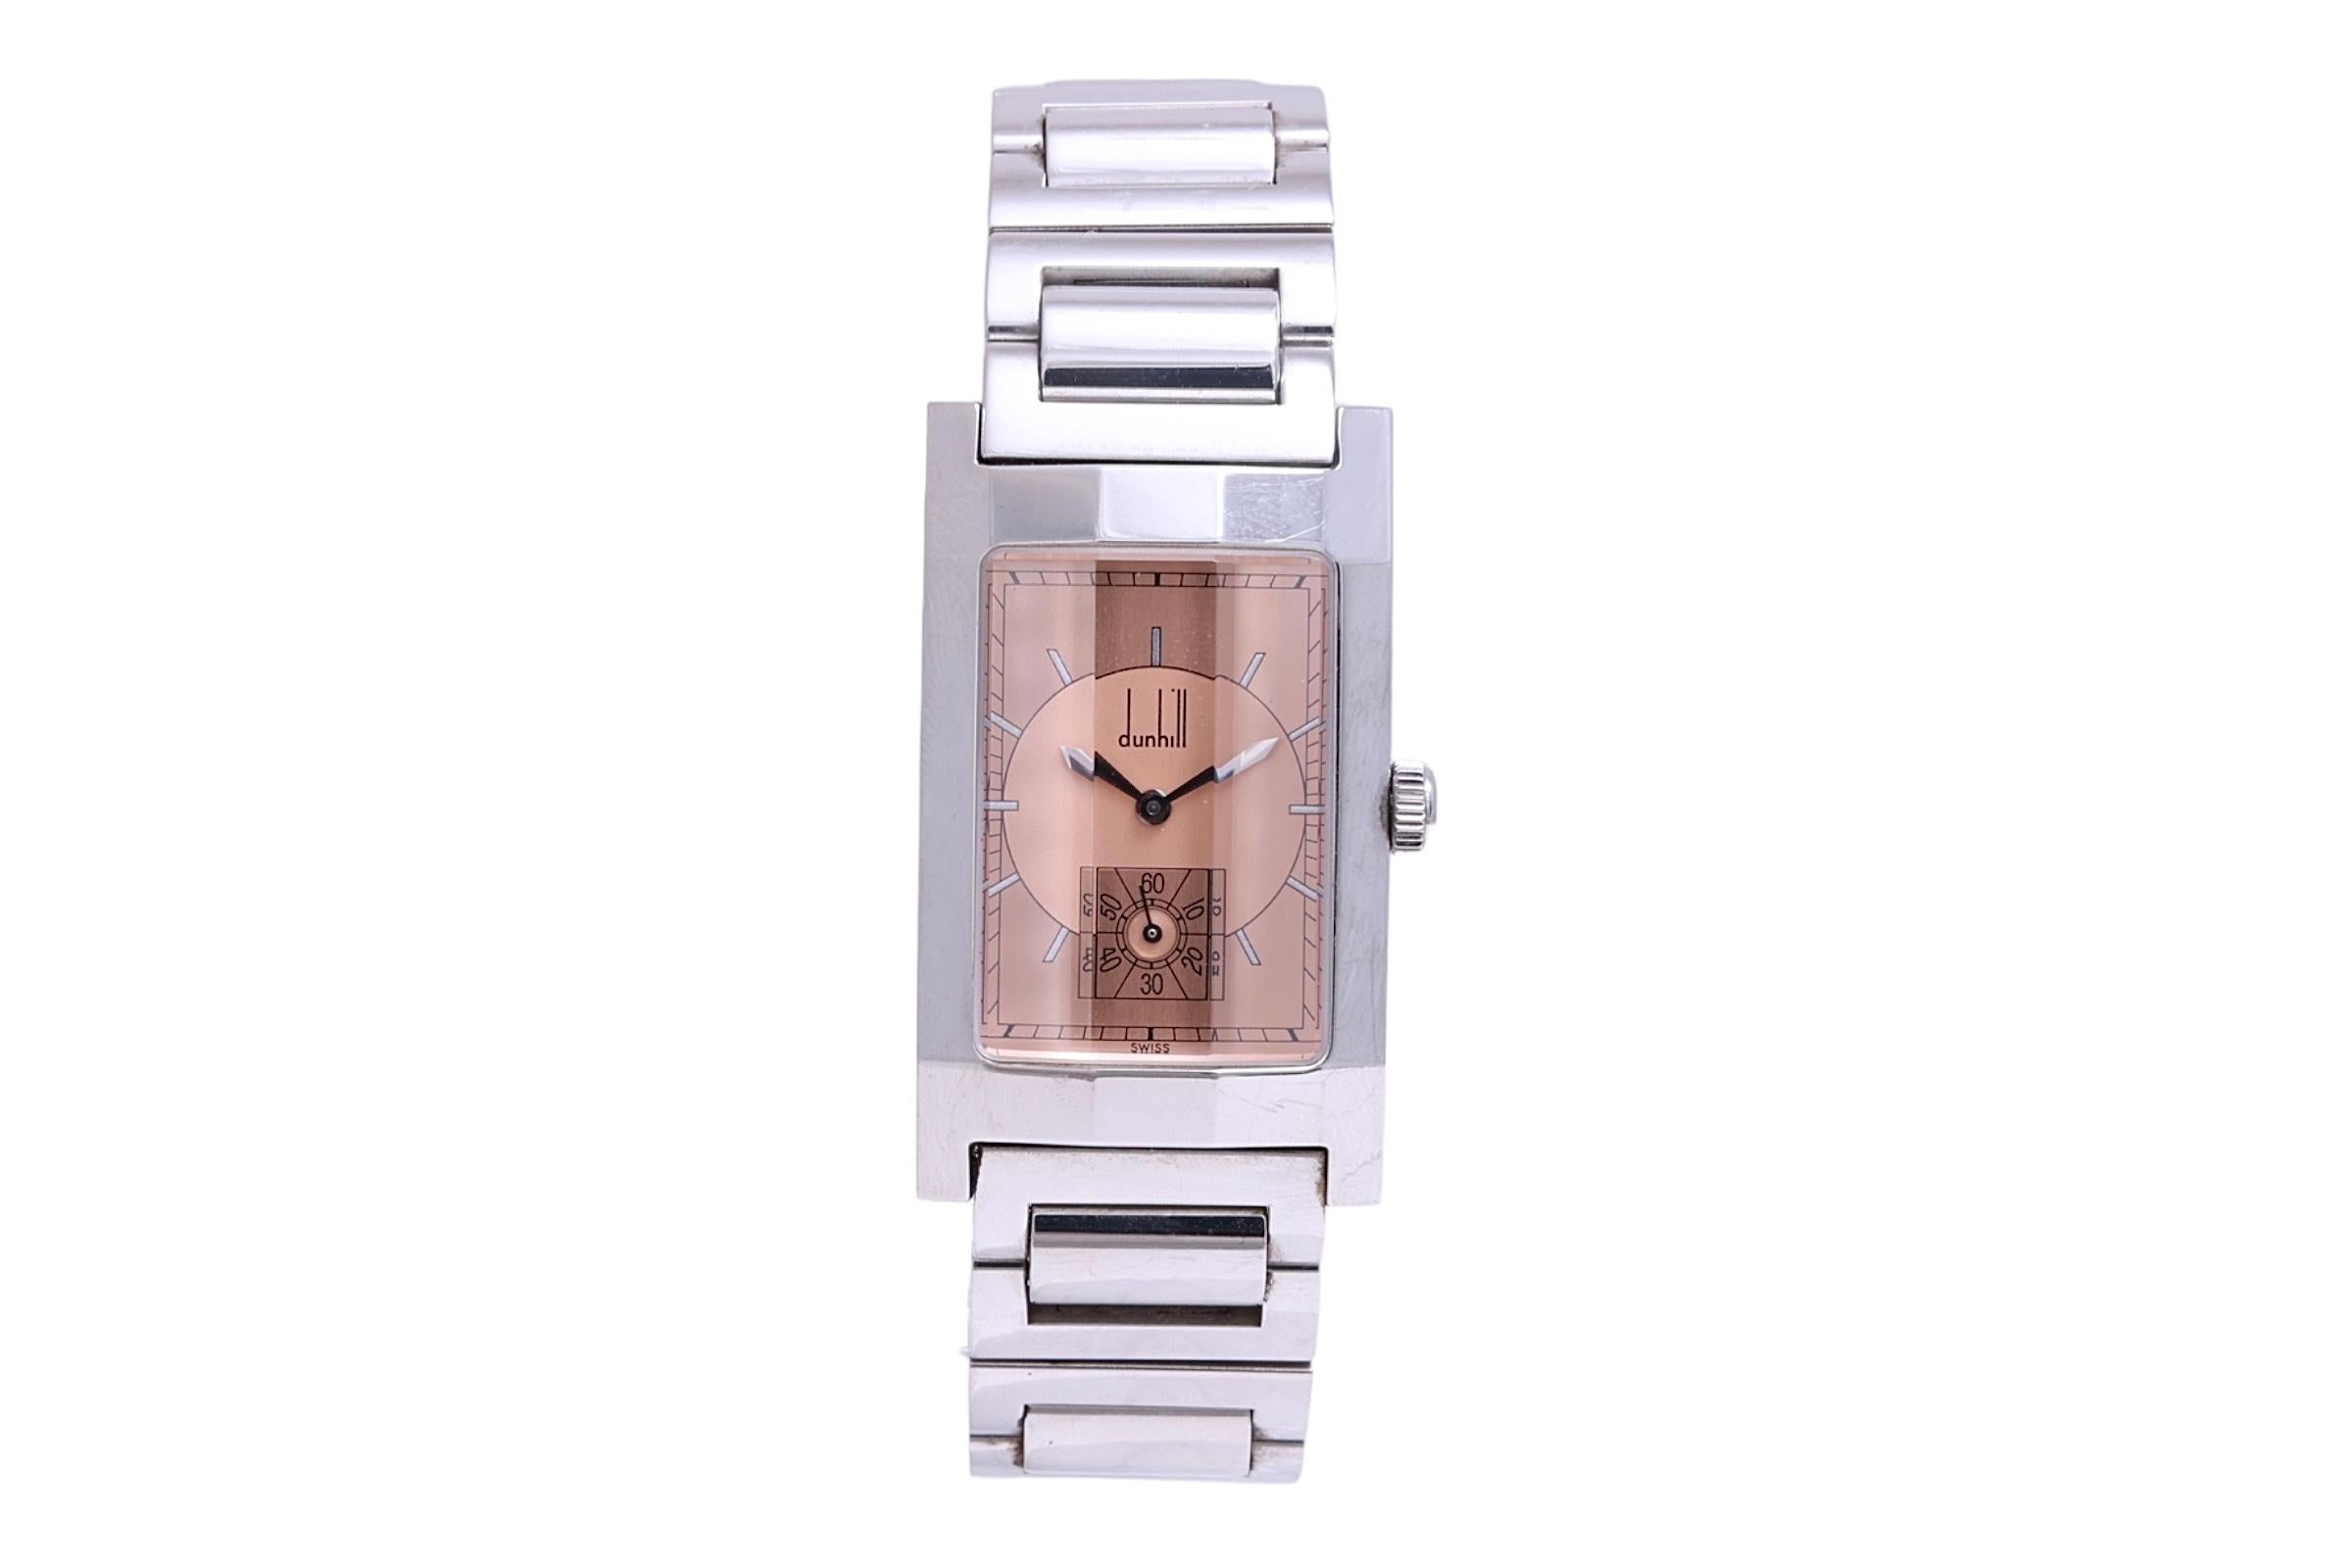 Edelstahl Dunhill Facette Art Deco Stil Armbanduhr mit Box & Papiere in schönem Zustand

Hat eine herrliche facettierte Glas wie Fall!

Gehäuse & Armband: Edelstahl, wasserdicht 30M, passt an ein 19 cm Handgelenk

Uhrwerk : Quarz

Zifferblatt :